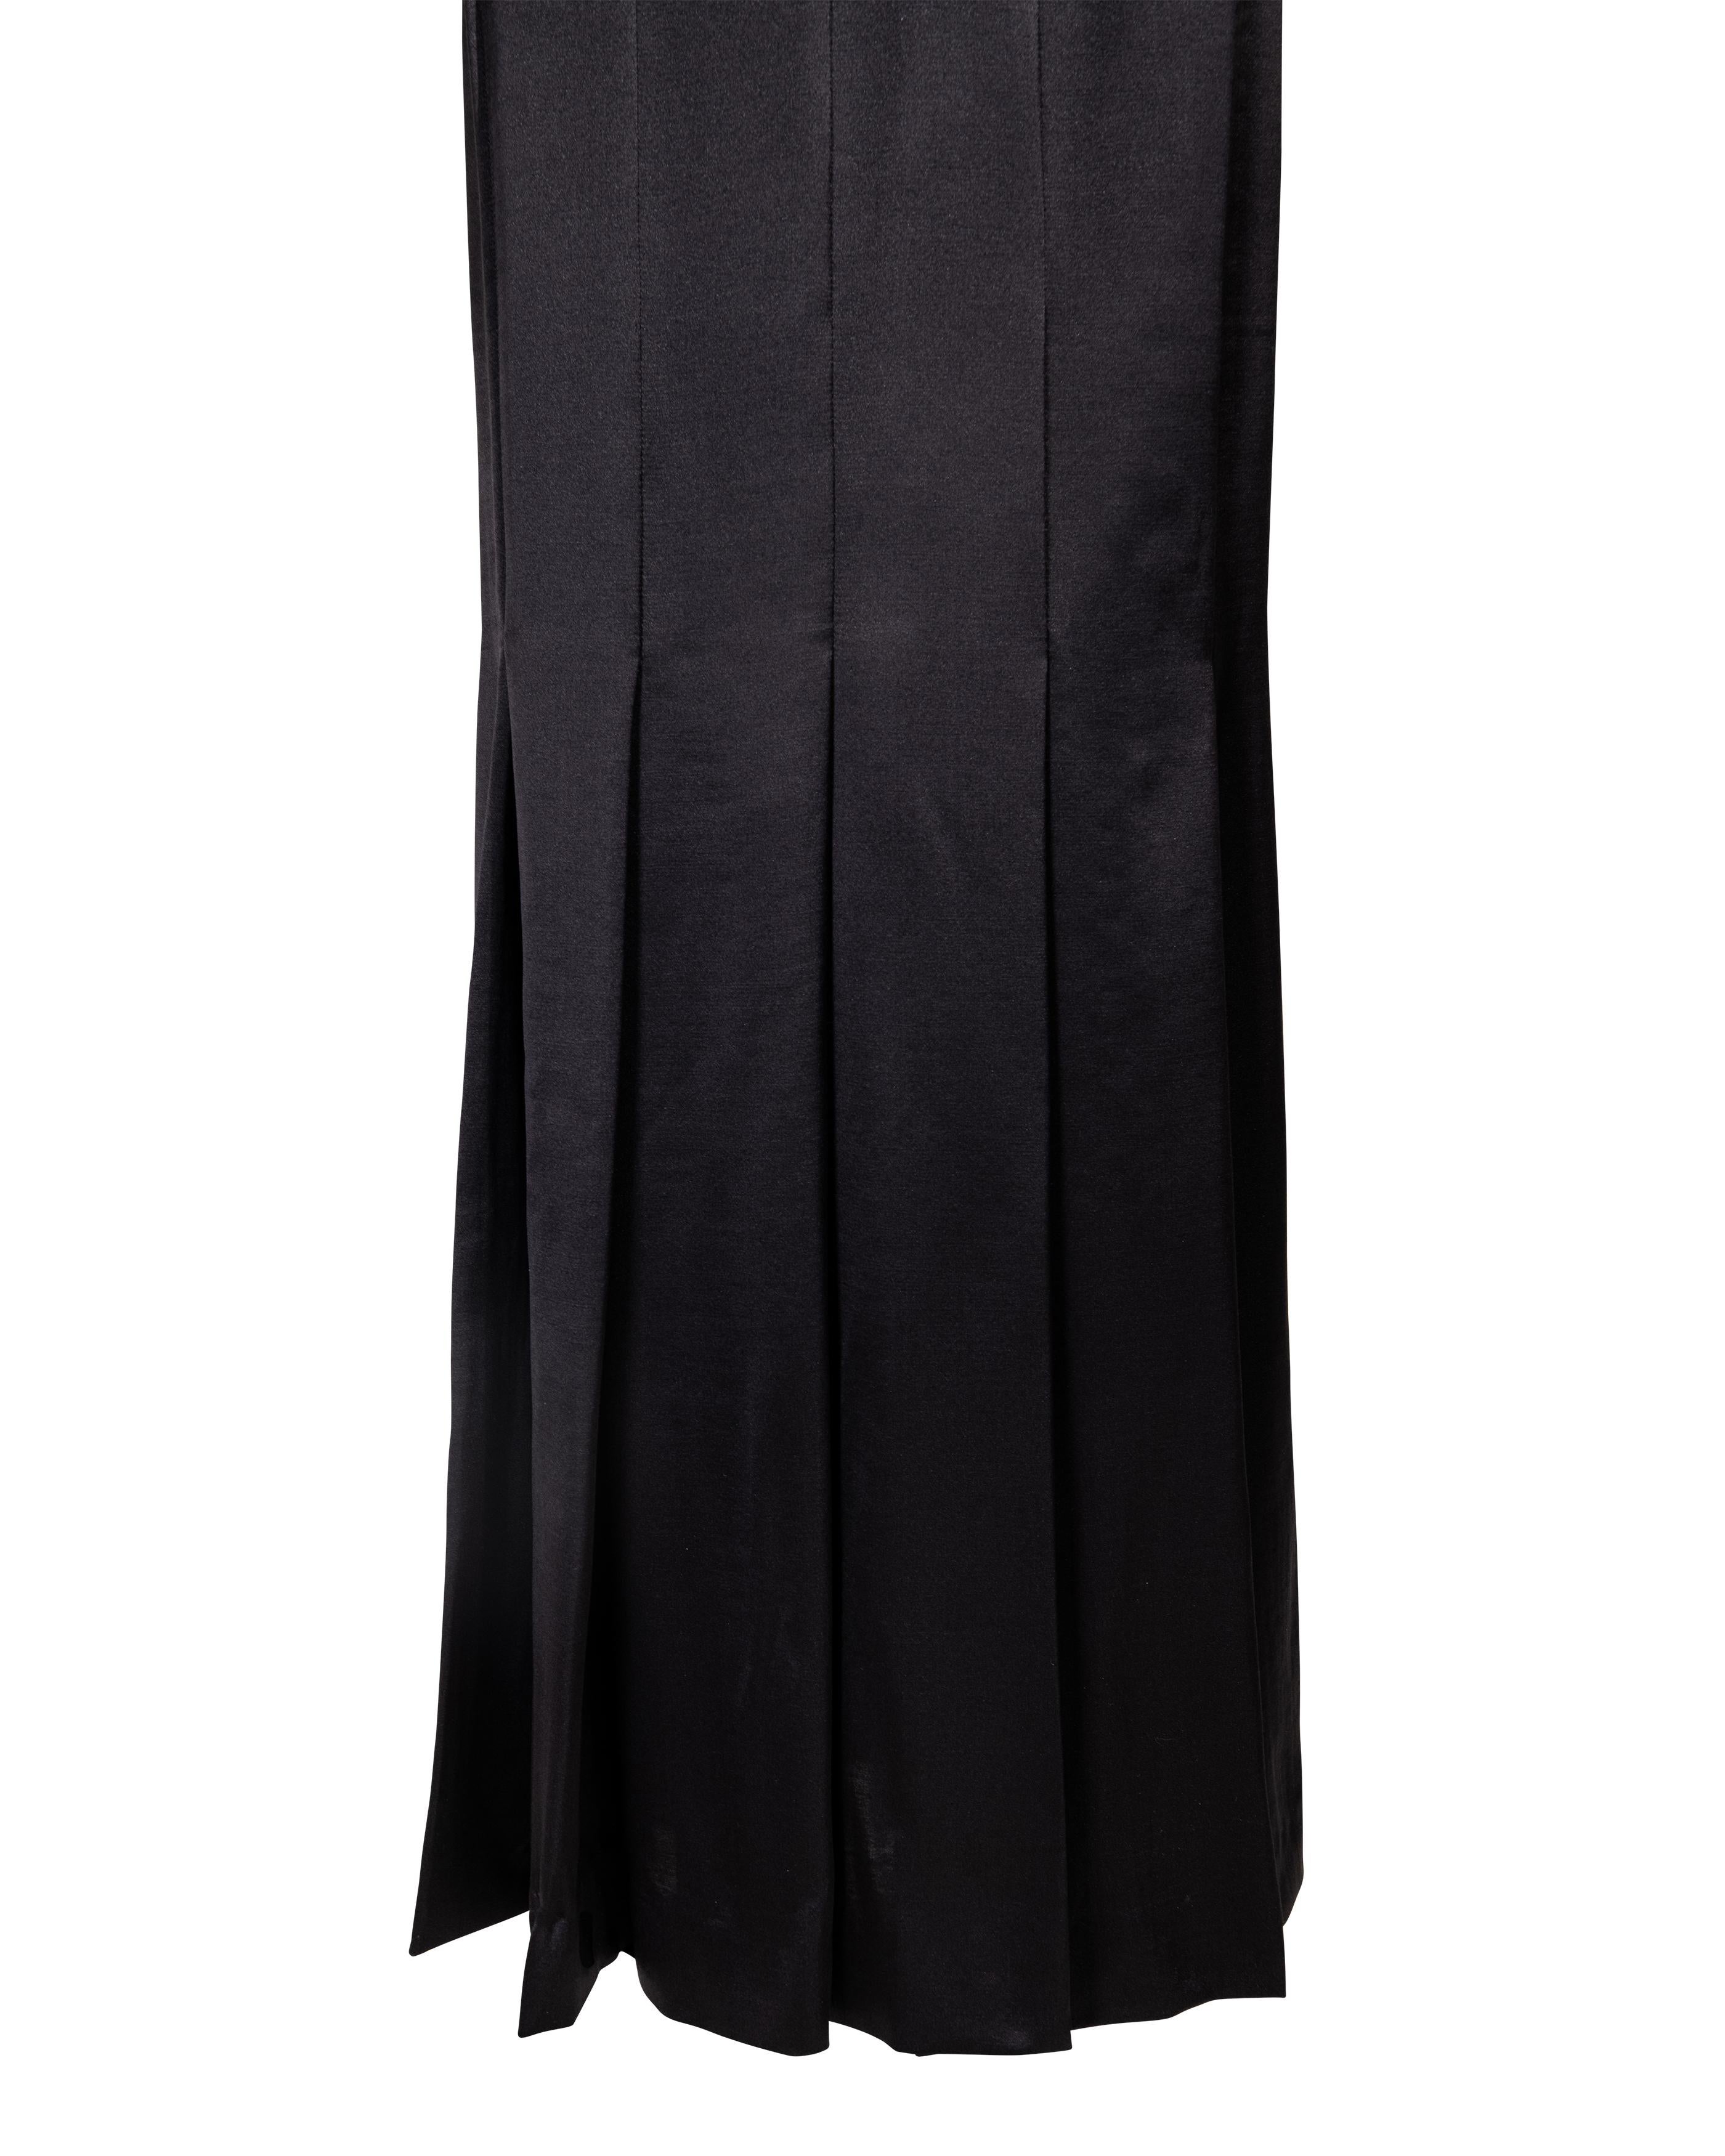 Robe plissée noire Givenchy par Alexander McQueen des années 1990 2